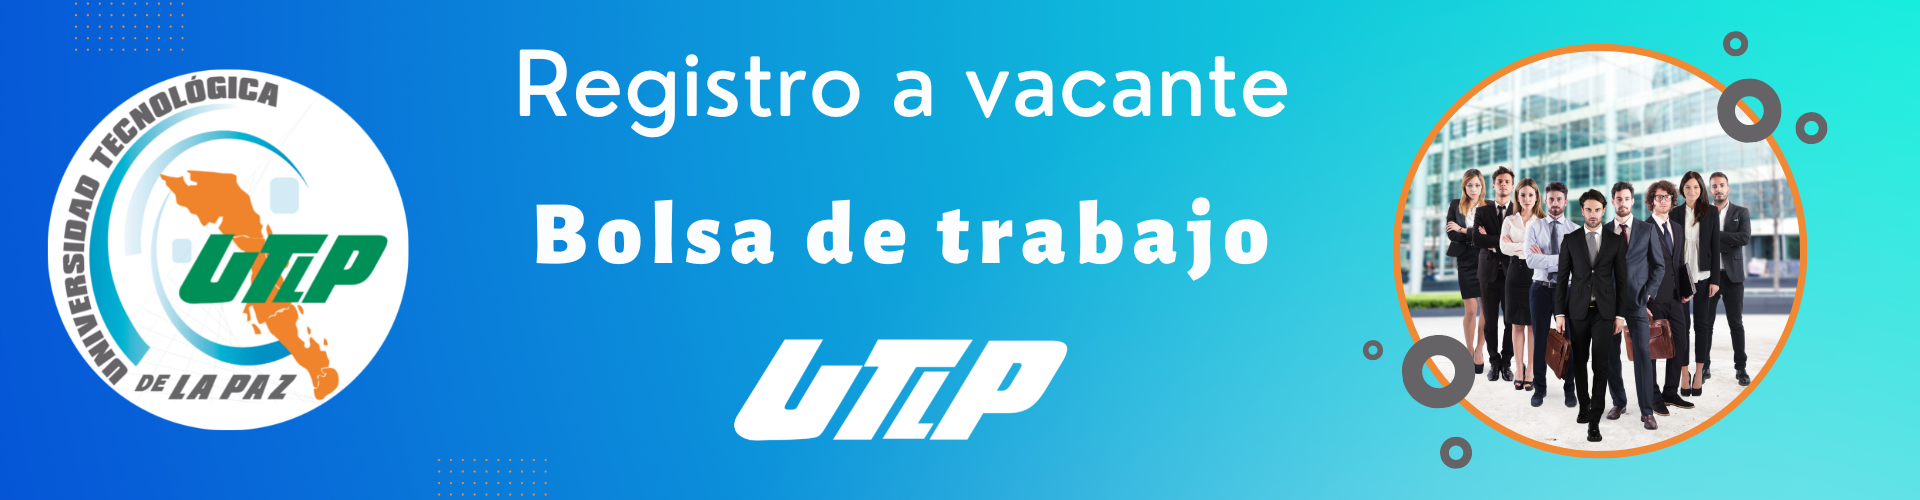 Registro a vacante de la Bolsa de trabajo UTLP